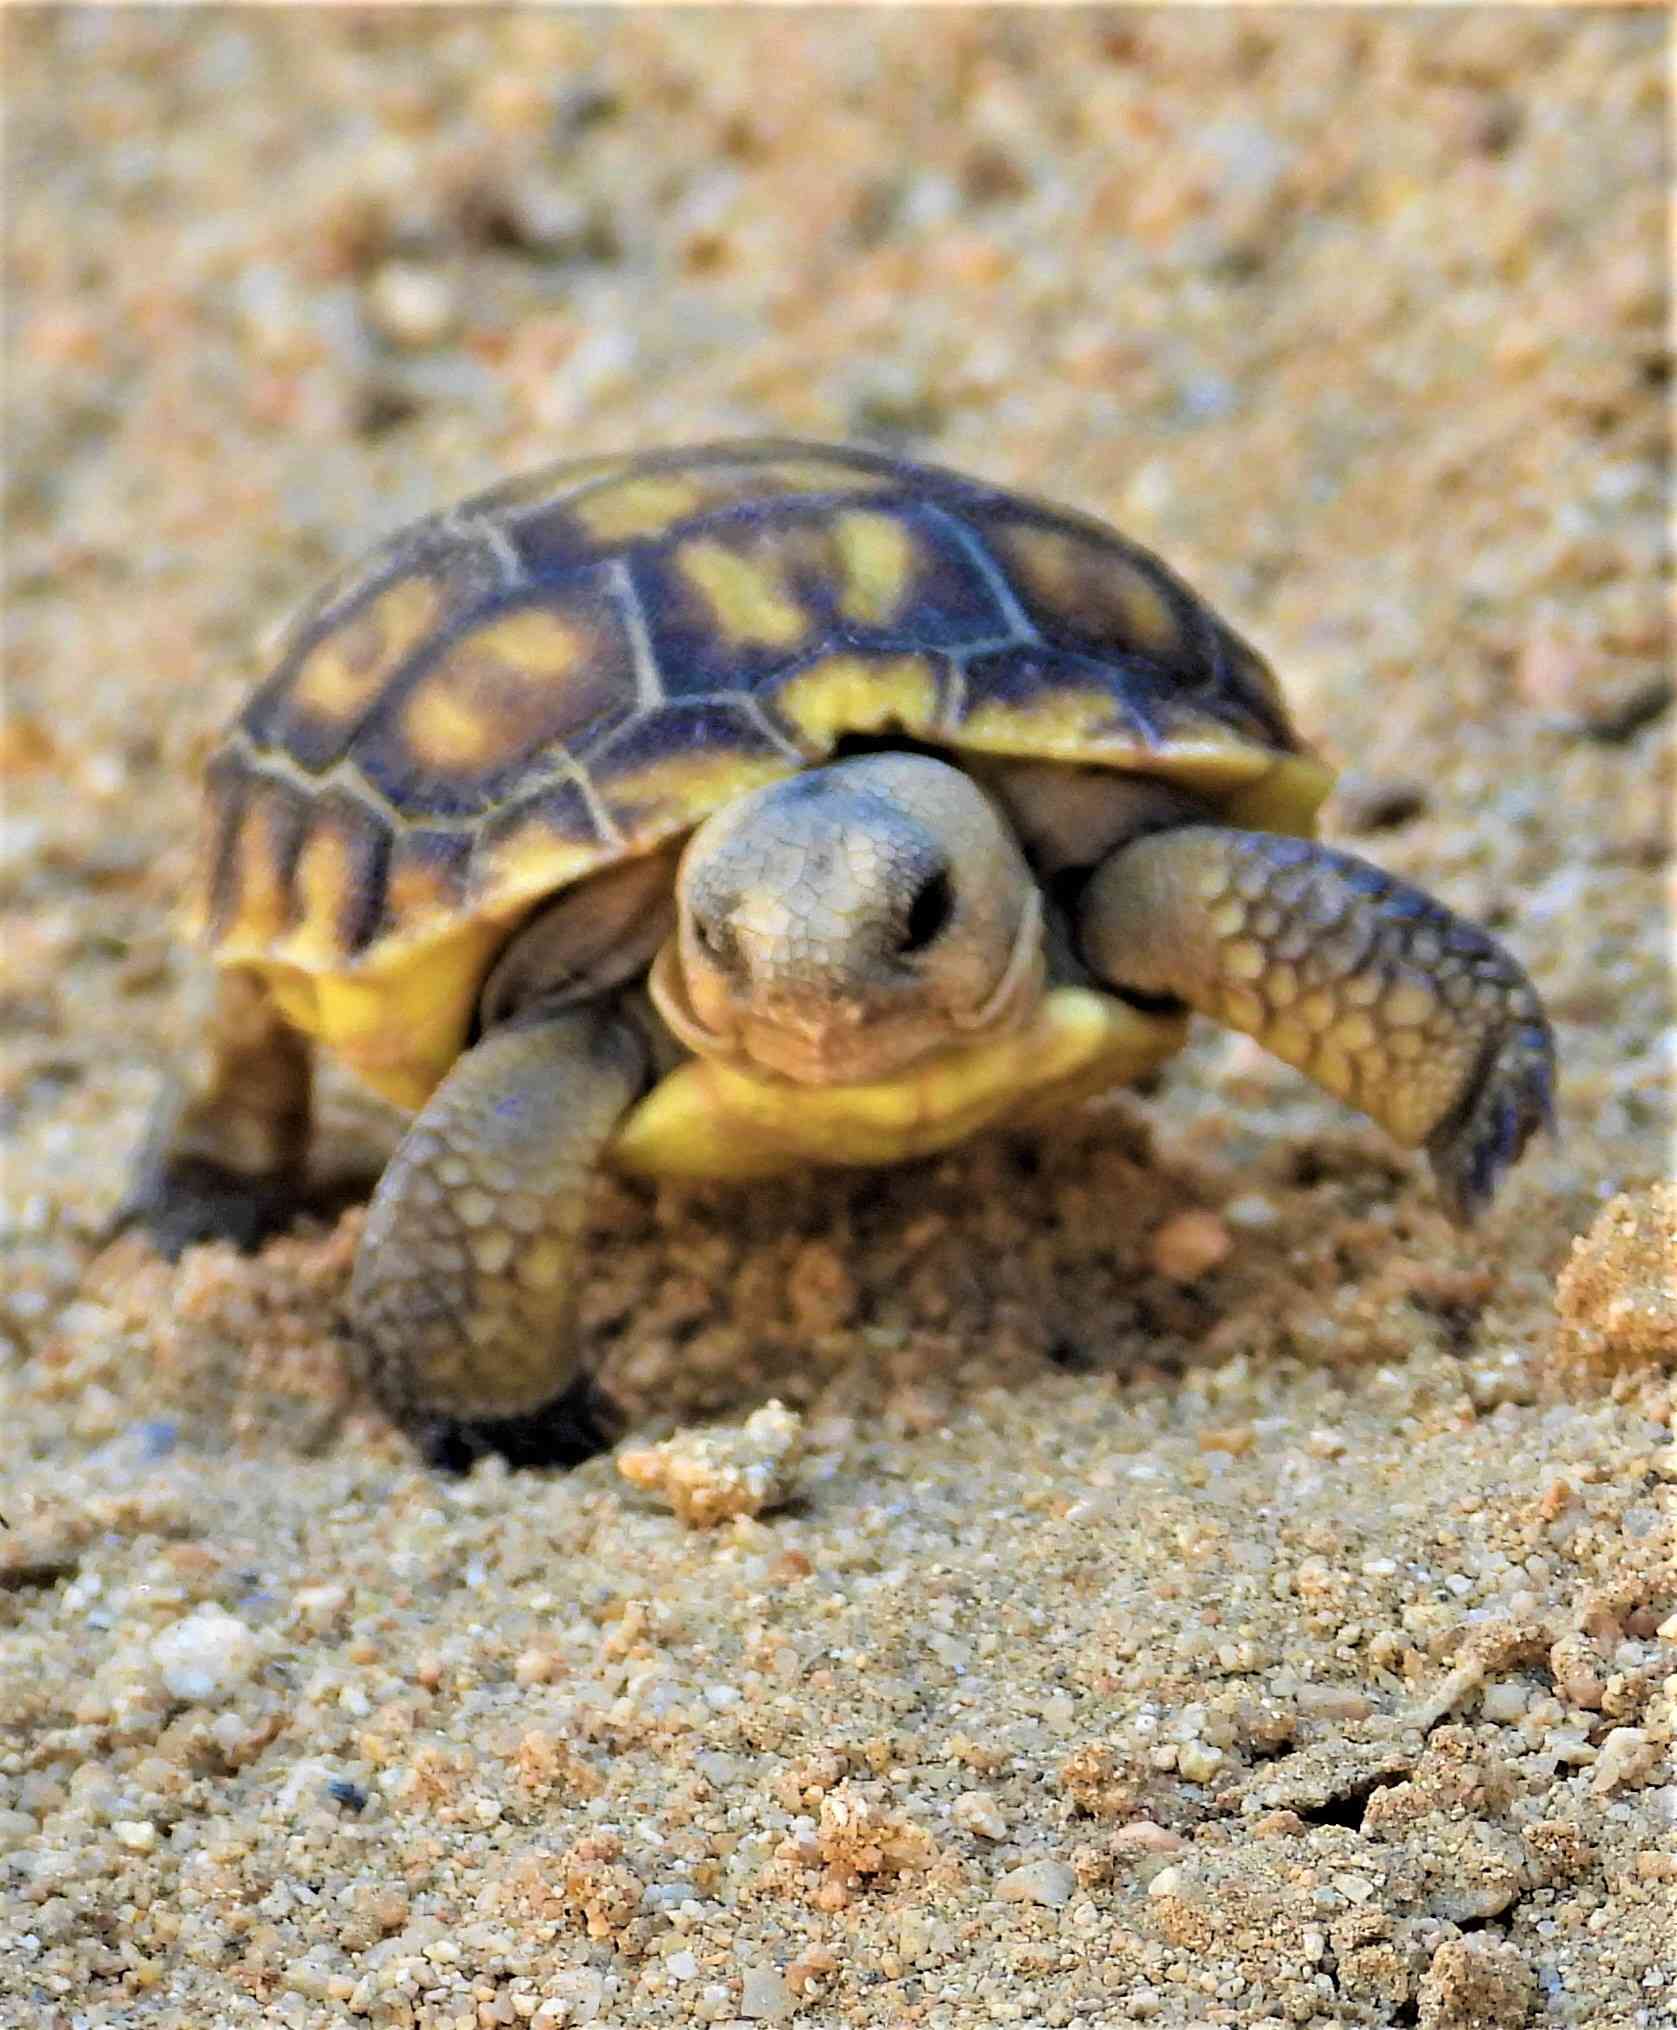 Threatened Agassiz's desert tortoise hatchling 